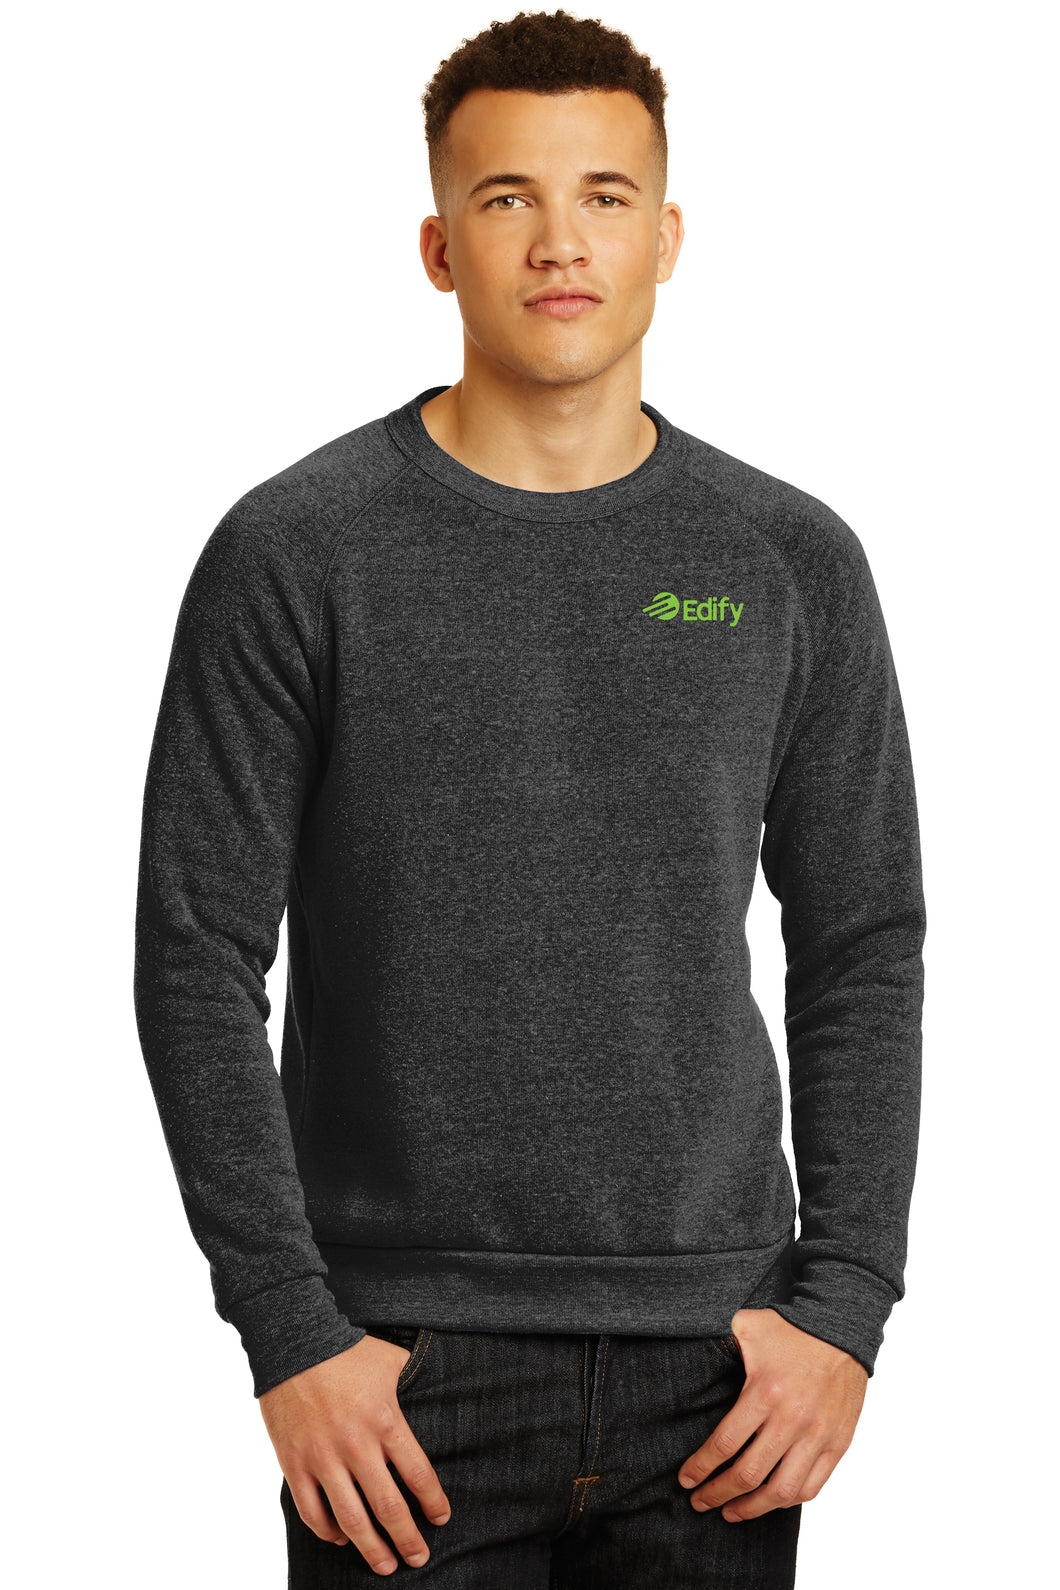 Edify Eco-Fleece Sweatshirt